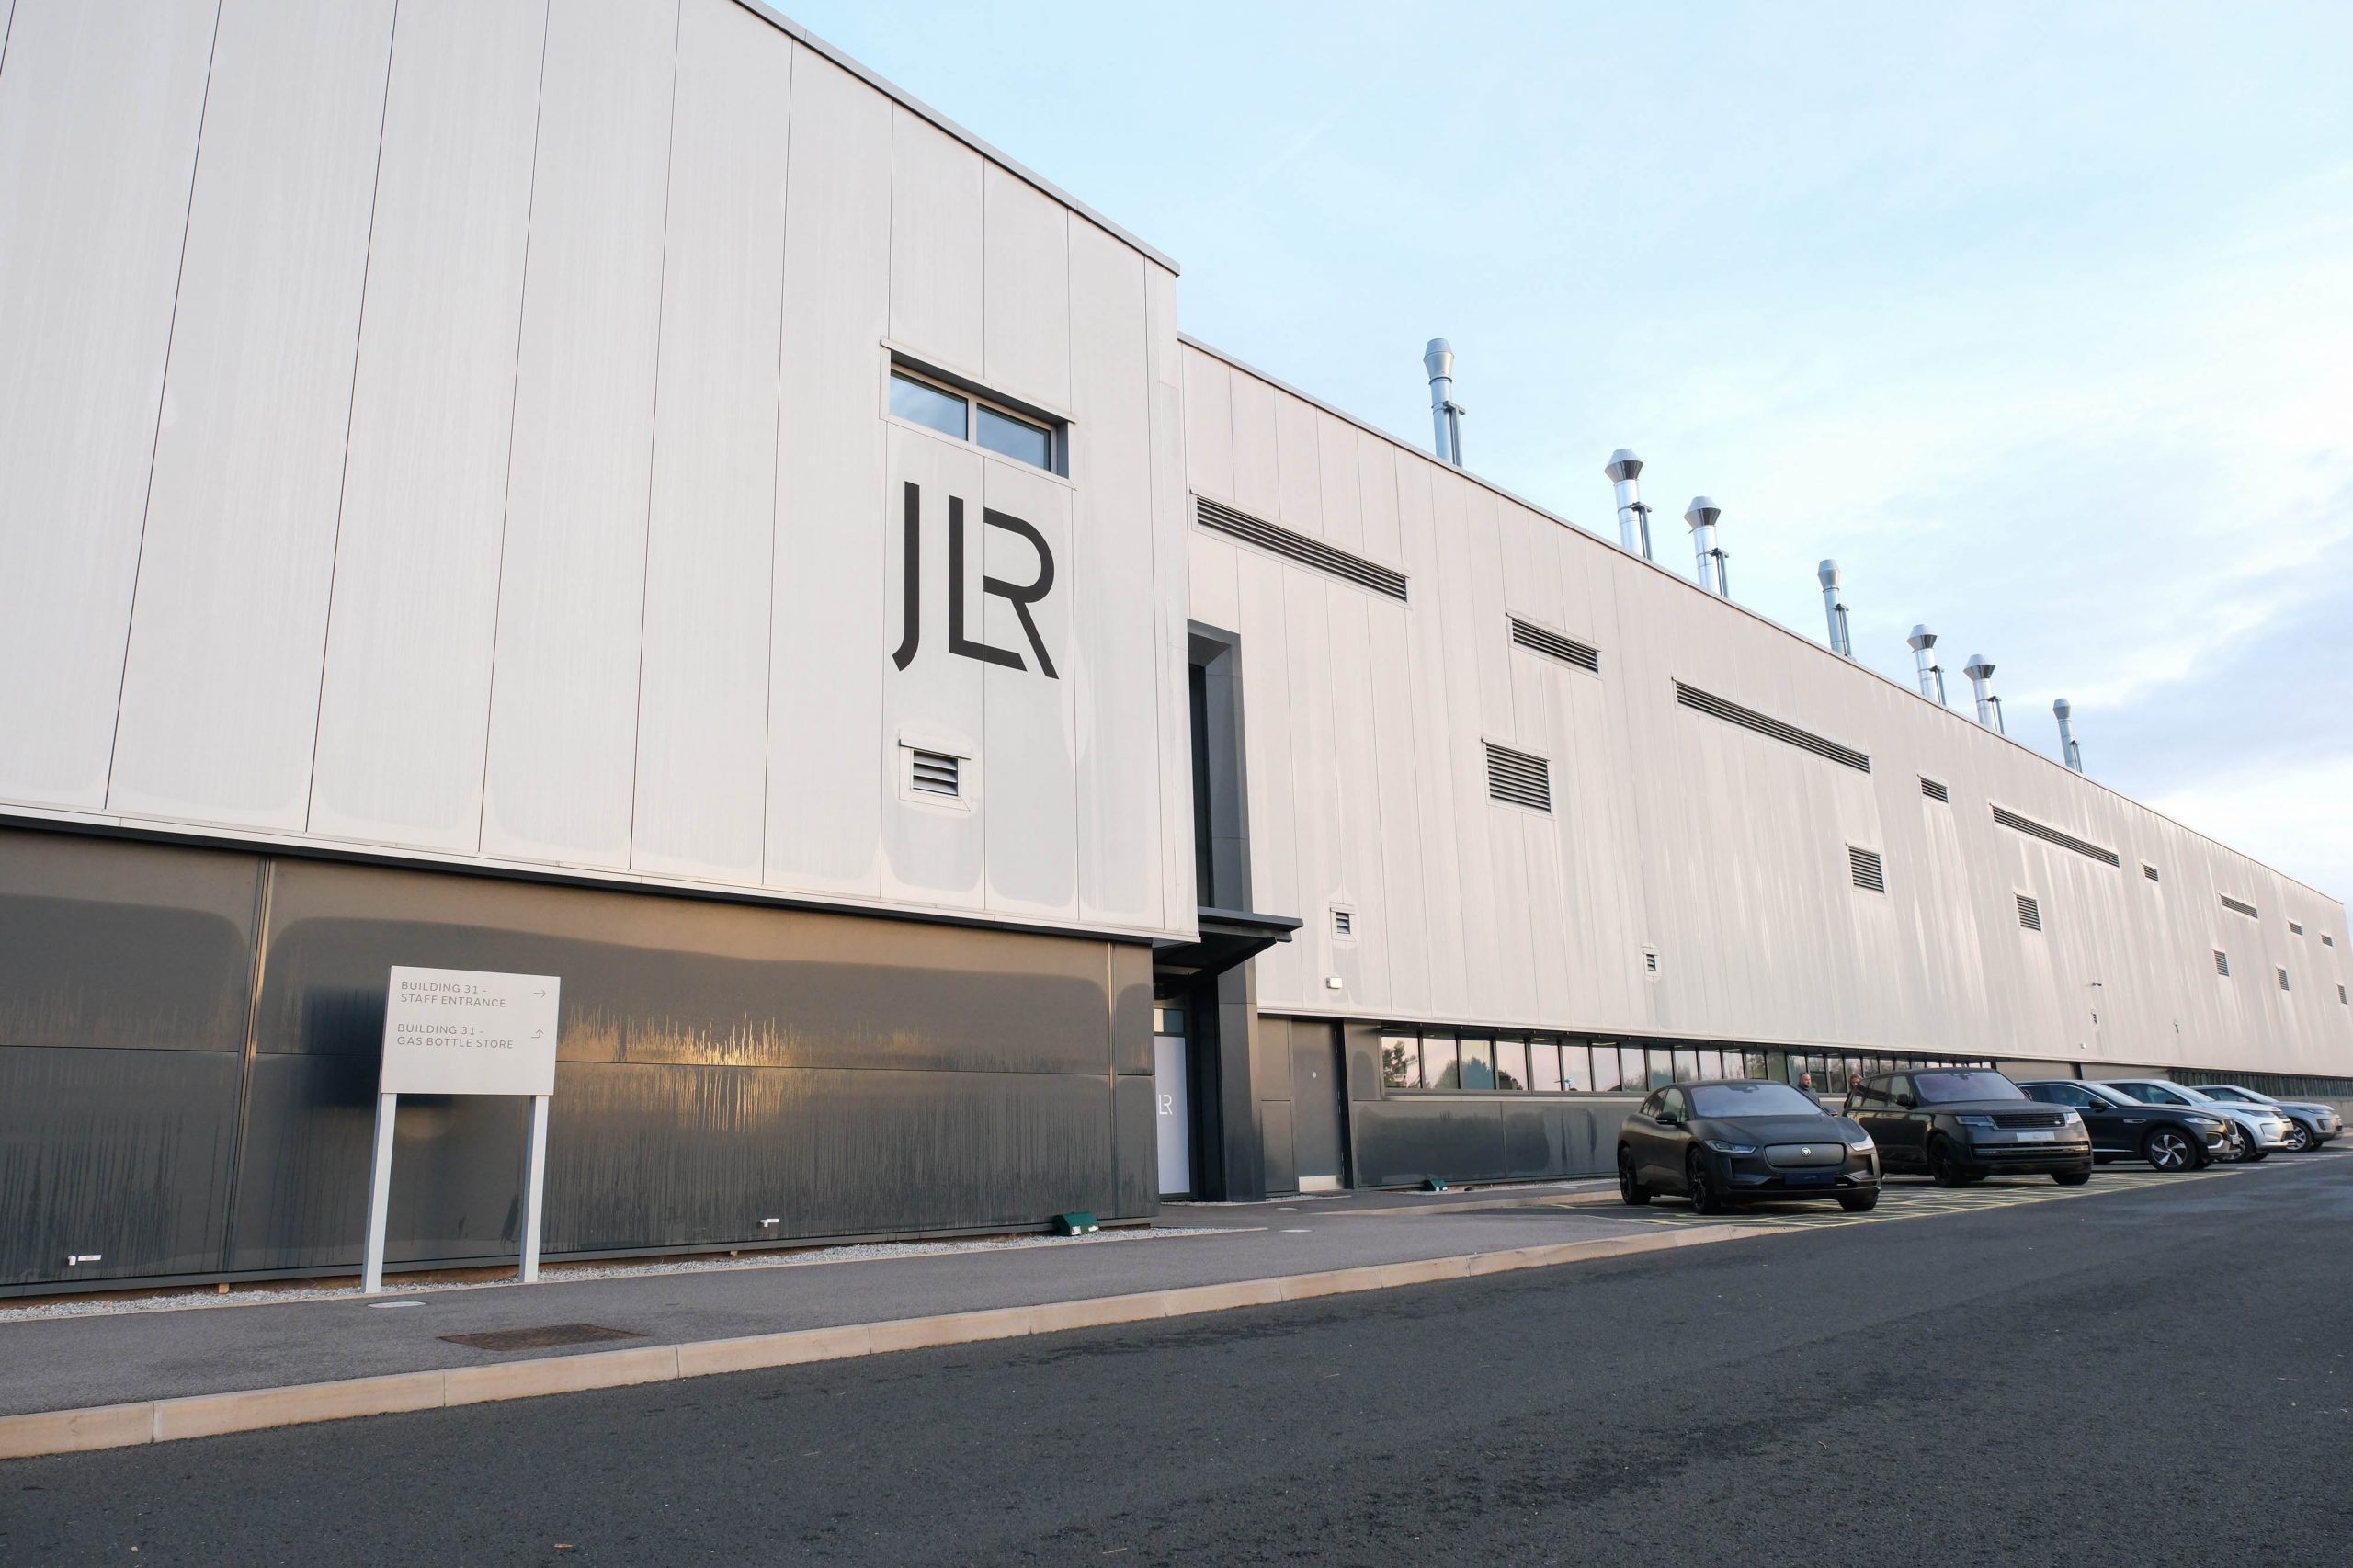 شركة JLR (جاكوار لاند روڤر) تعمل على تسريع عملية التحول الكهربائي من خلال مختبر الطاقة المستقبلية الجديد بقيمة تبلغ 250 مليون جنيه إسترليني 2